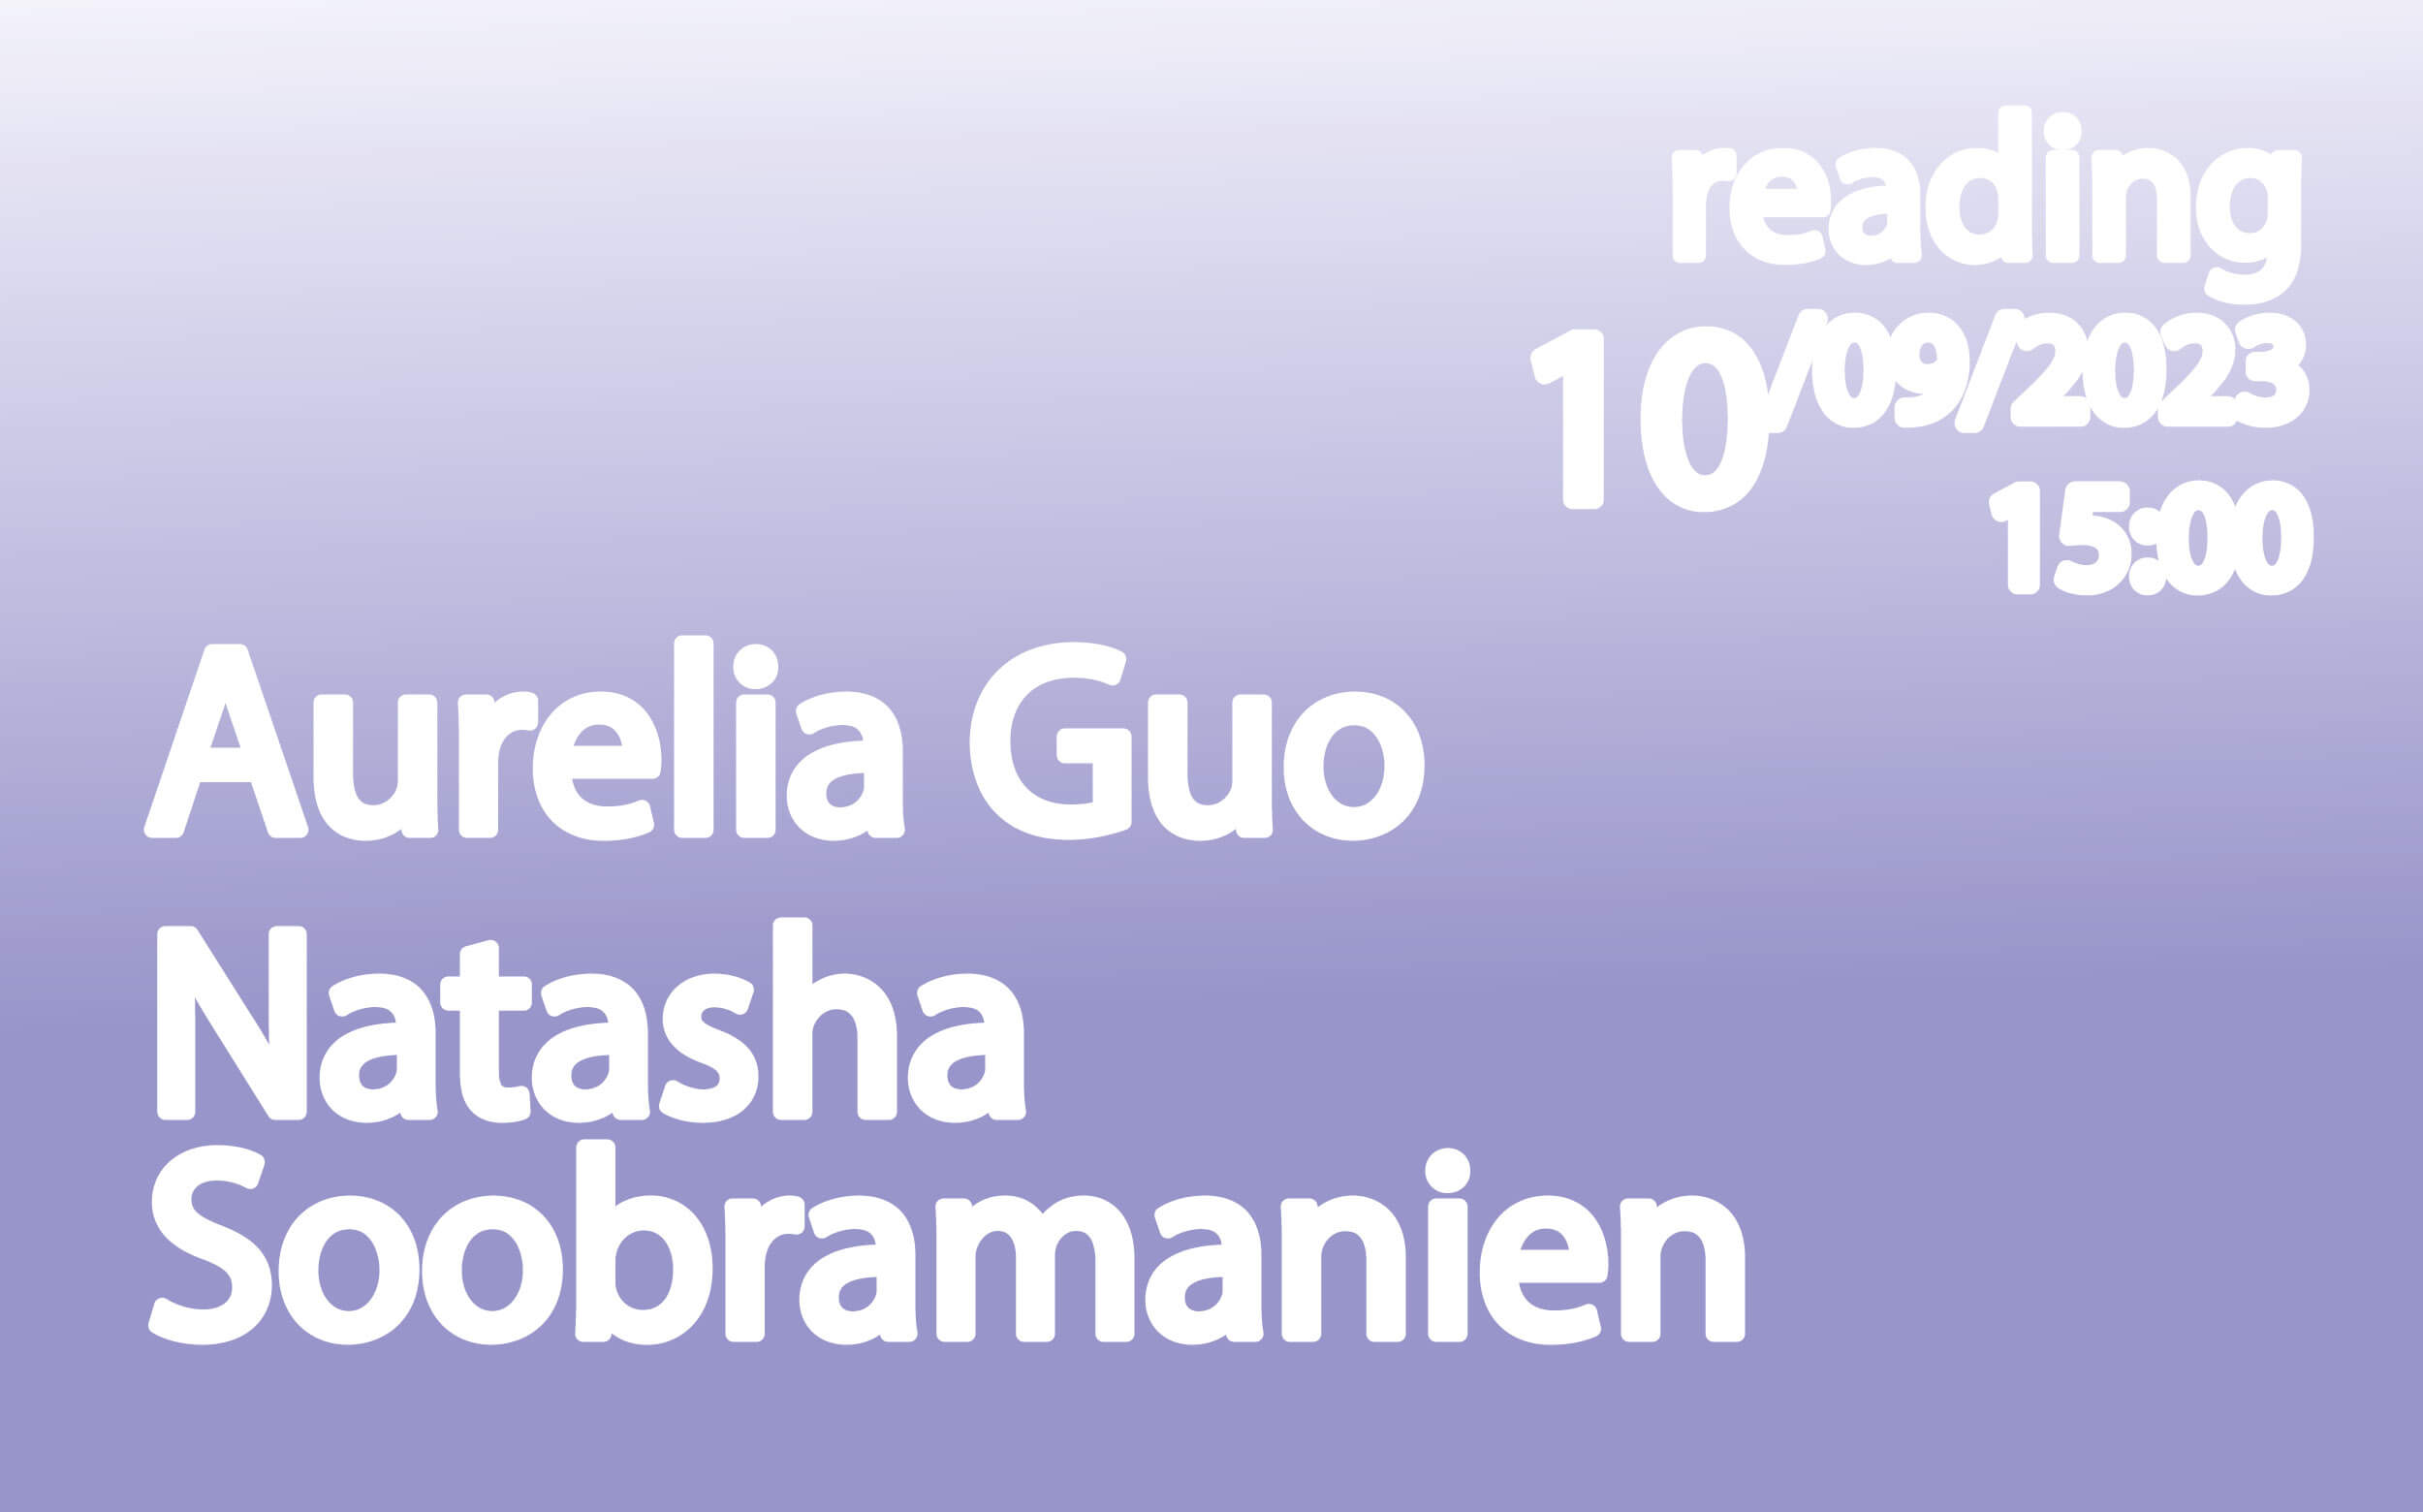 [Reading] Aurelia Guo and Natasha Soobramanien